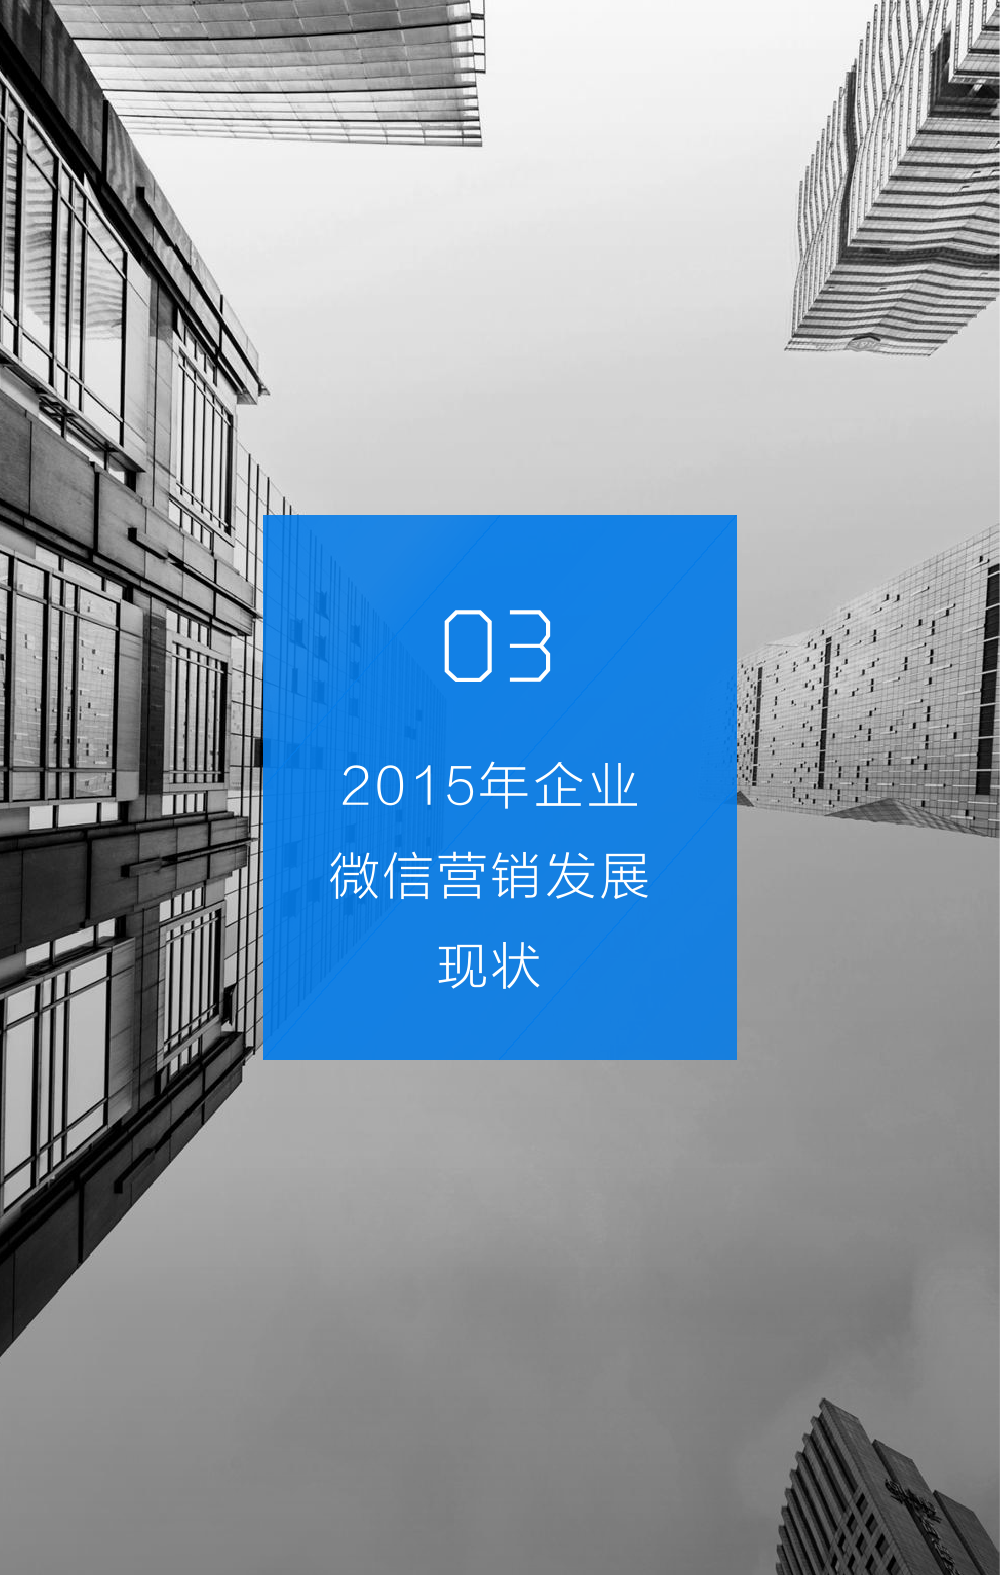 2015年微信营销研究报告_000016